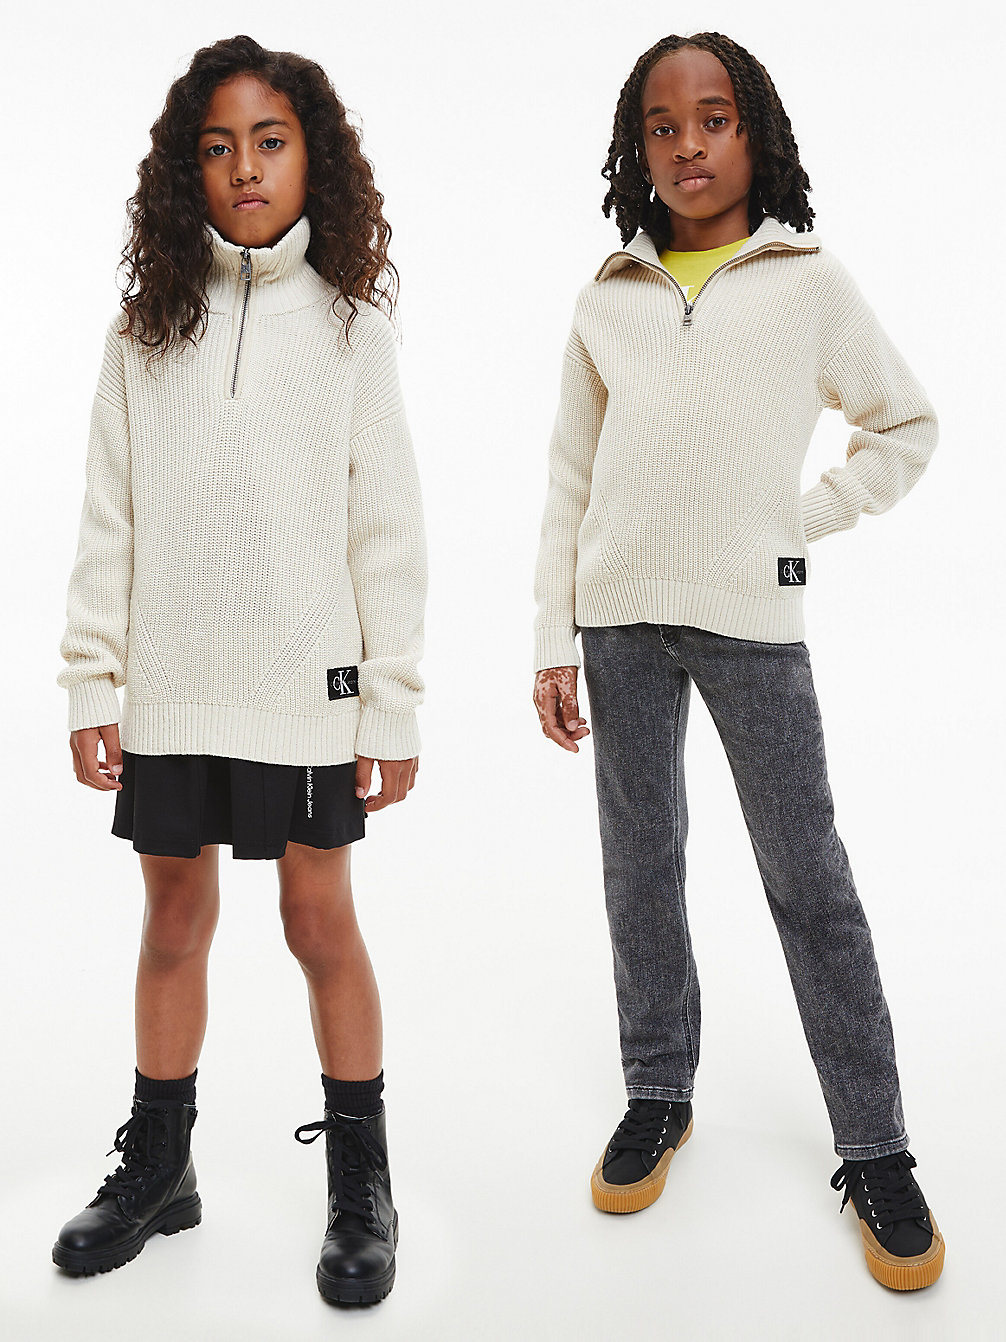 EGGSHELL > Unisex-Pullover Mit Reißverschlusskragen > undefined kids unisex - Calvin Klein